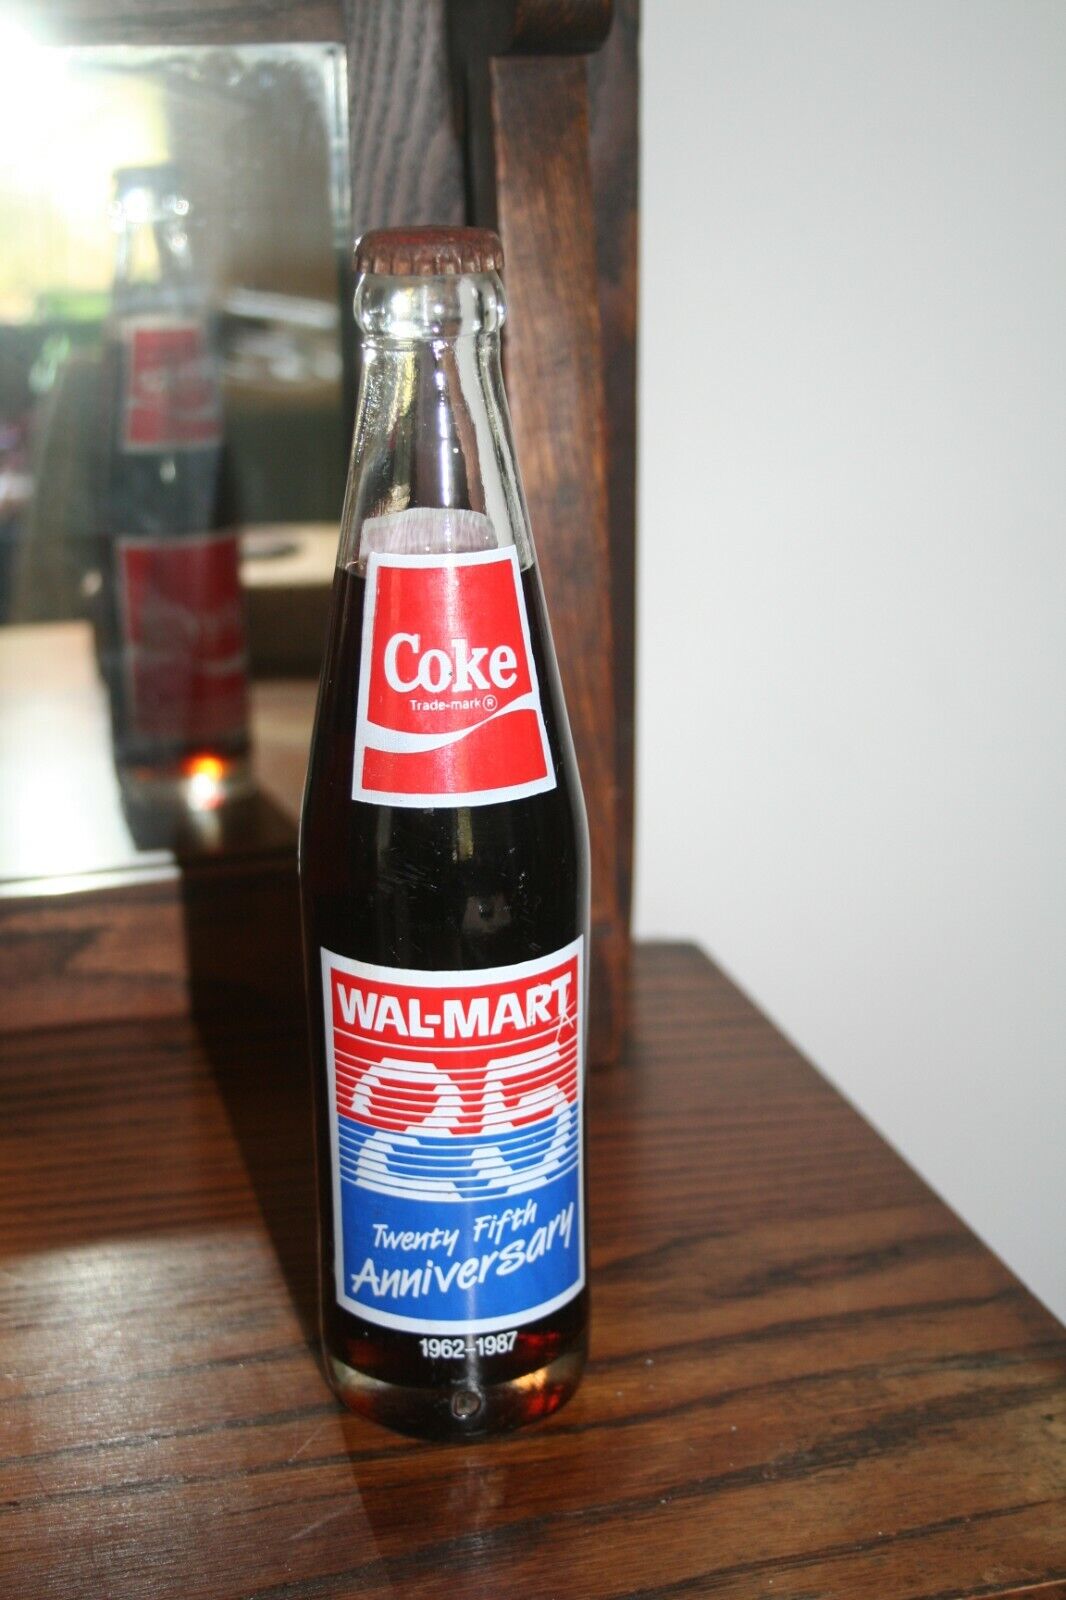 1987 WALMART 25th Anniversary Coke Coca-Cola Coke Bottle 1962 - 1987